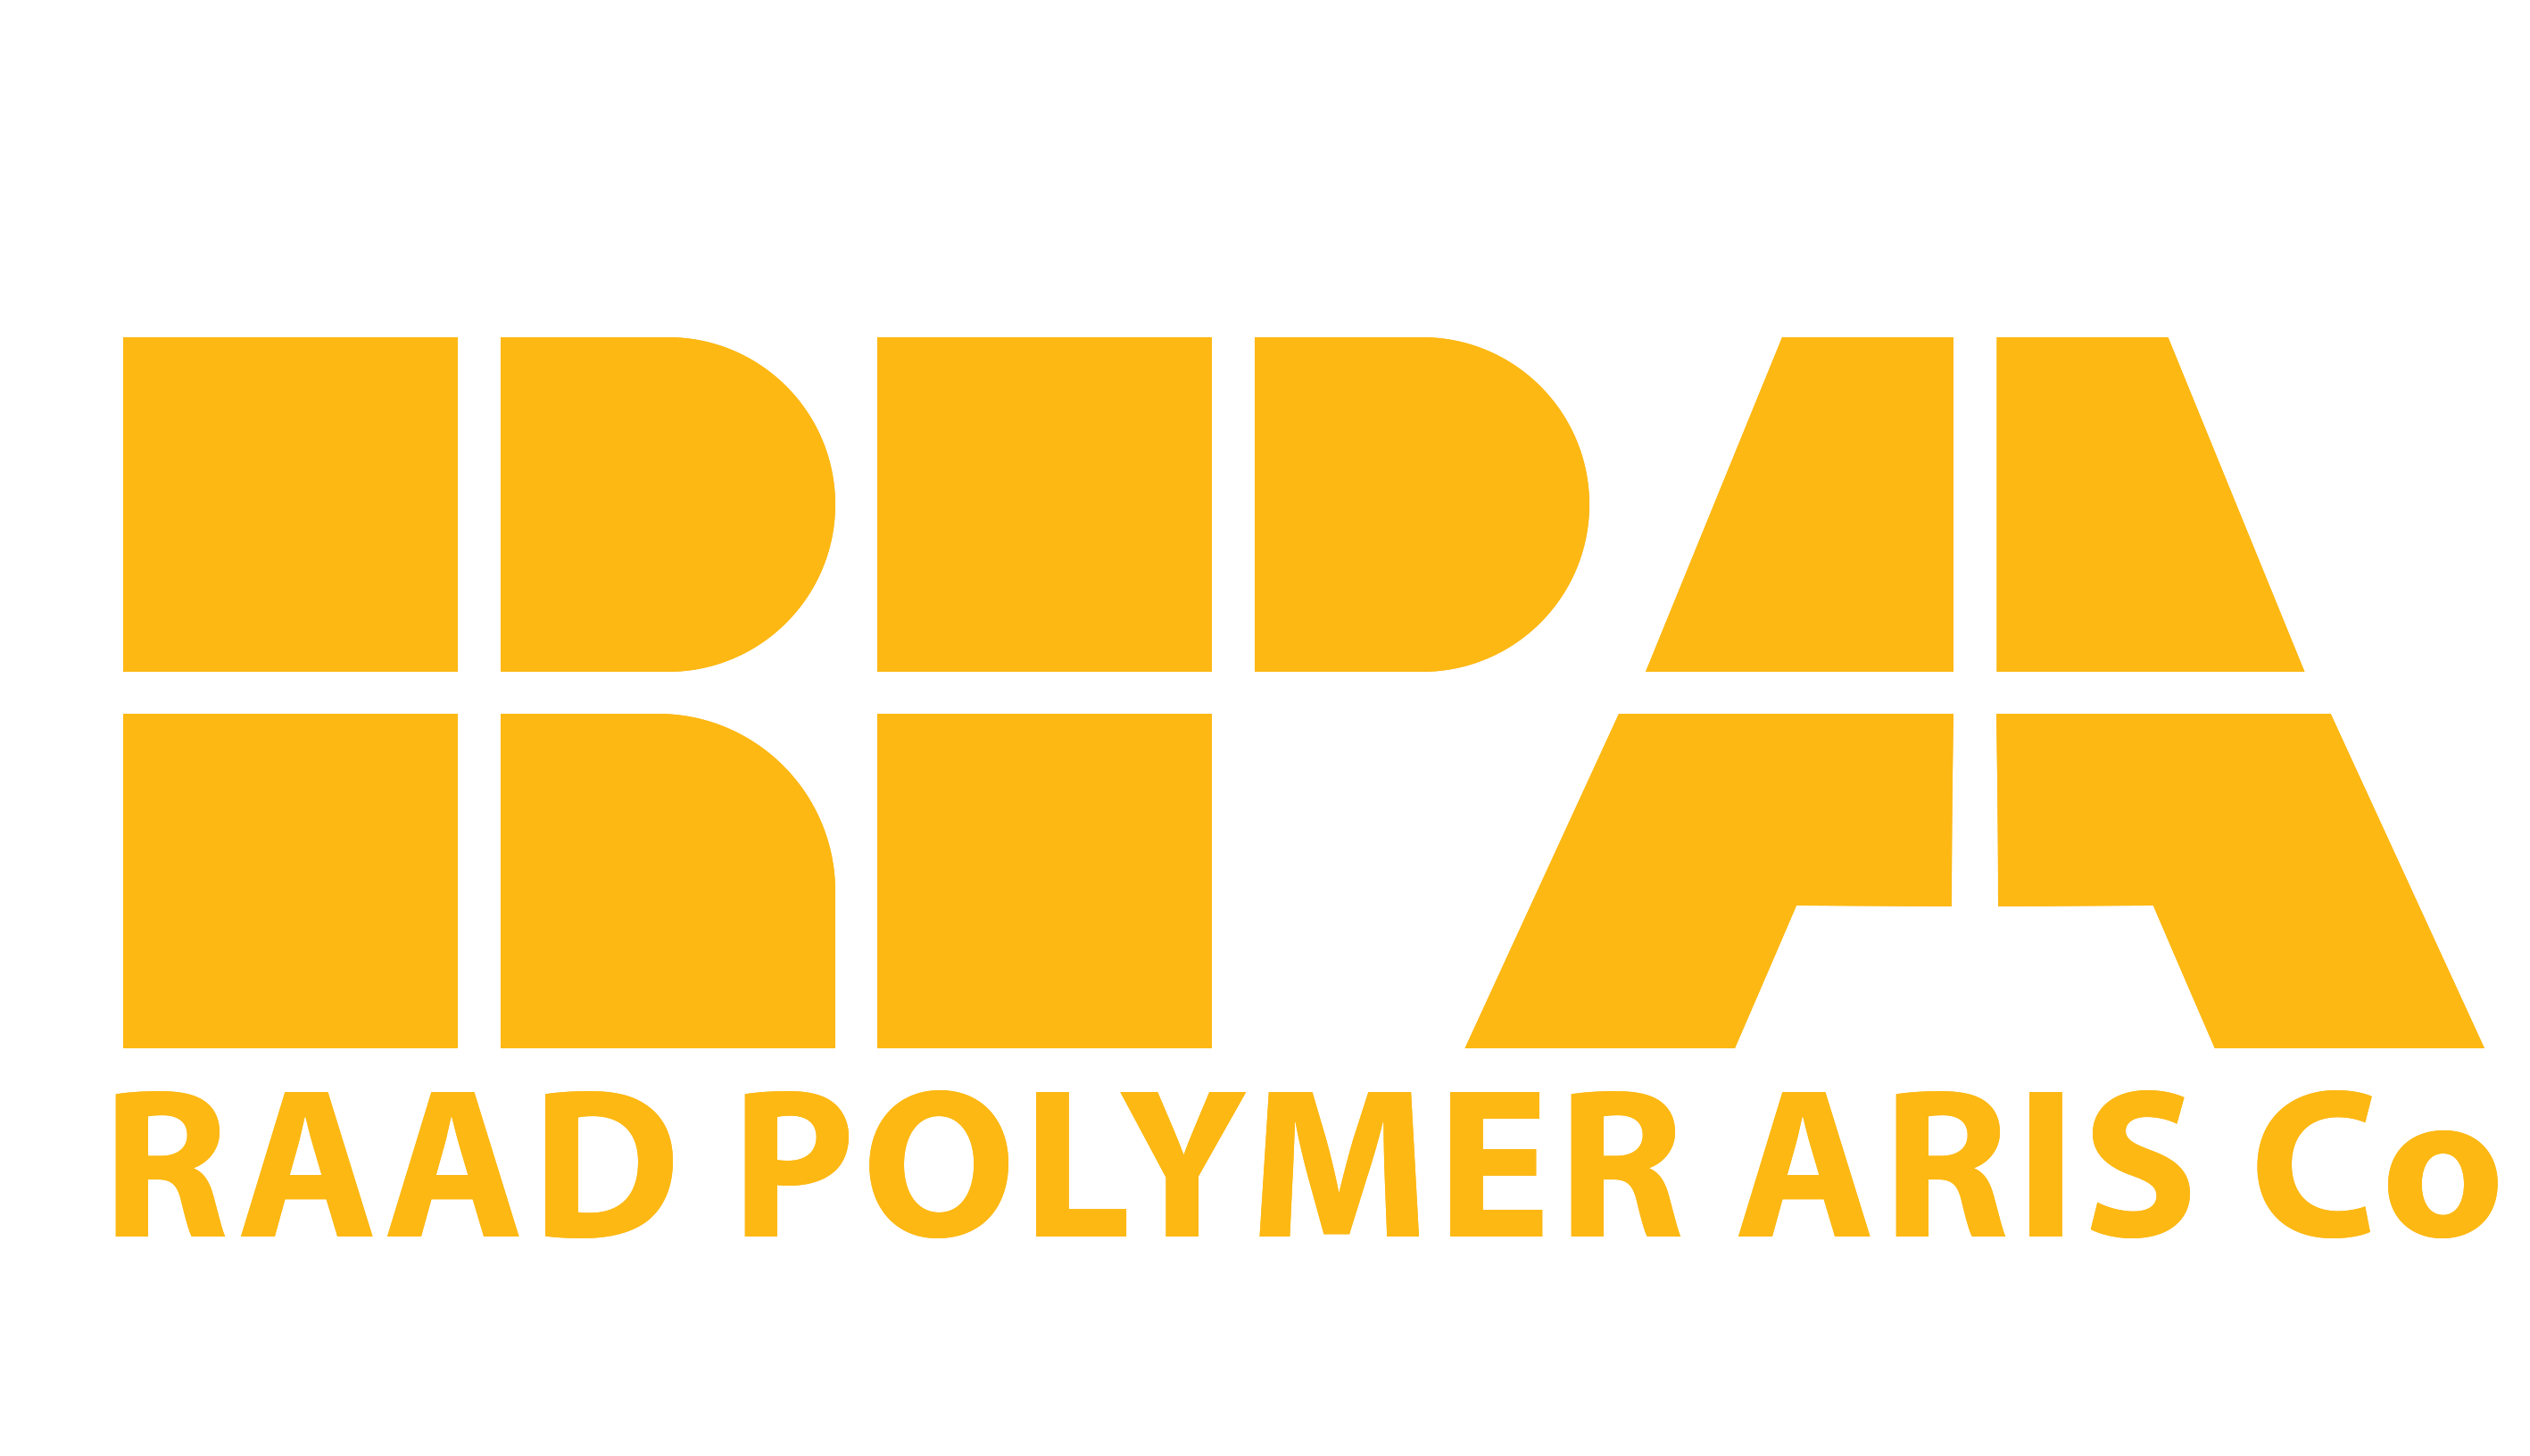 Raad Polymer Aris Co